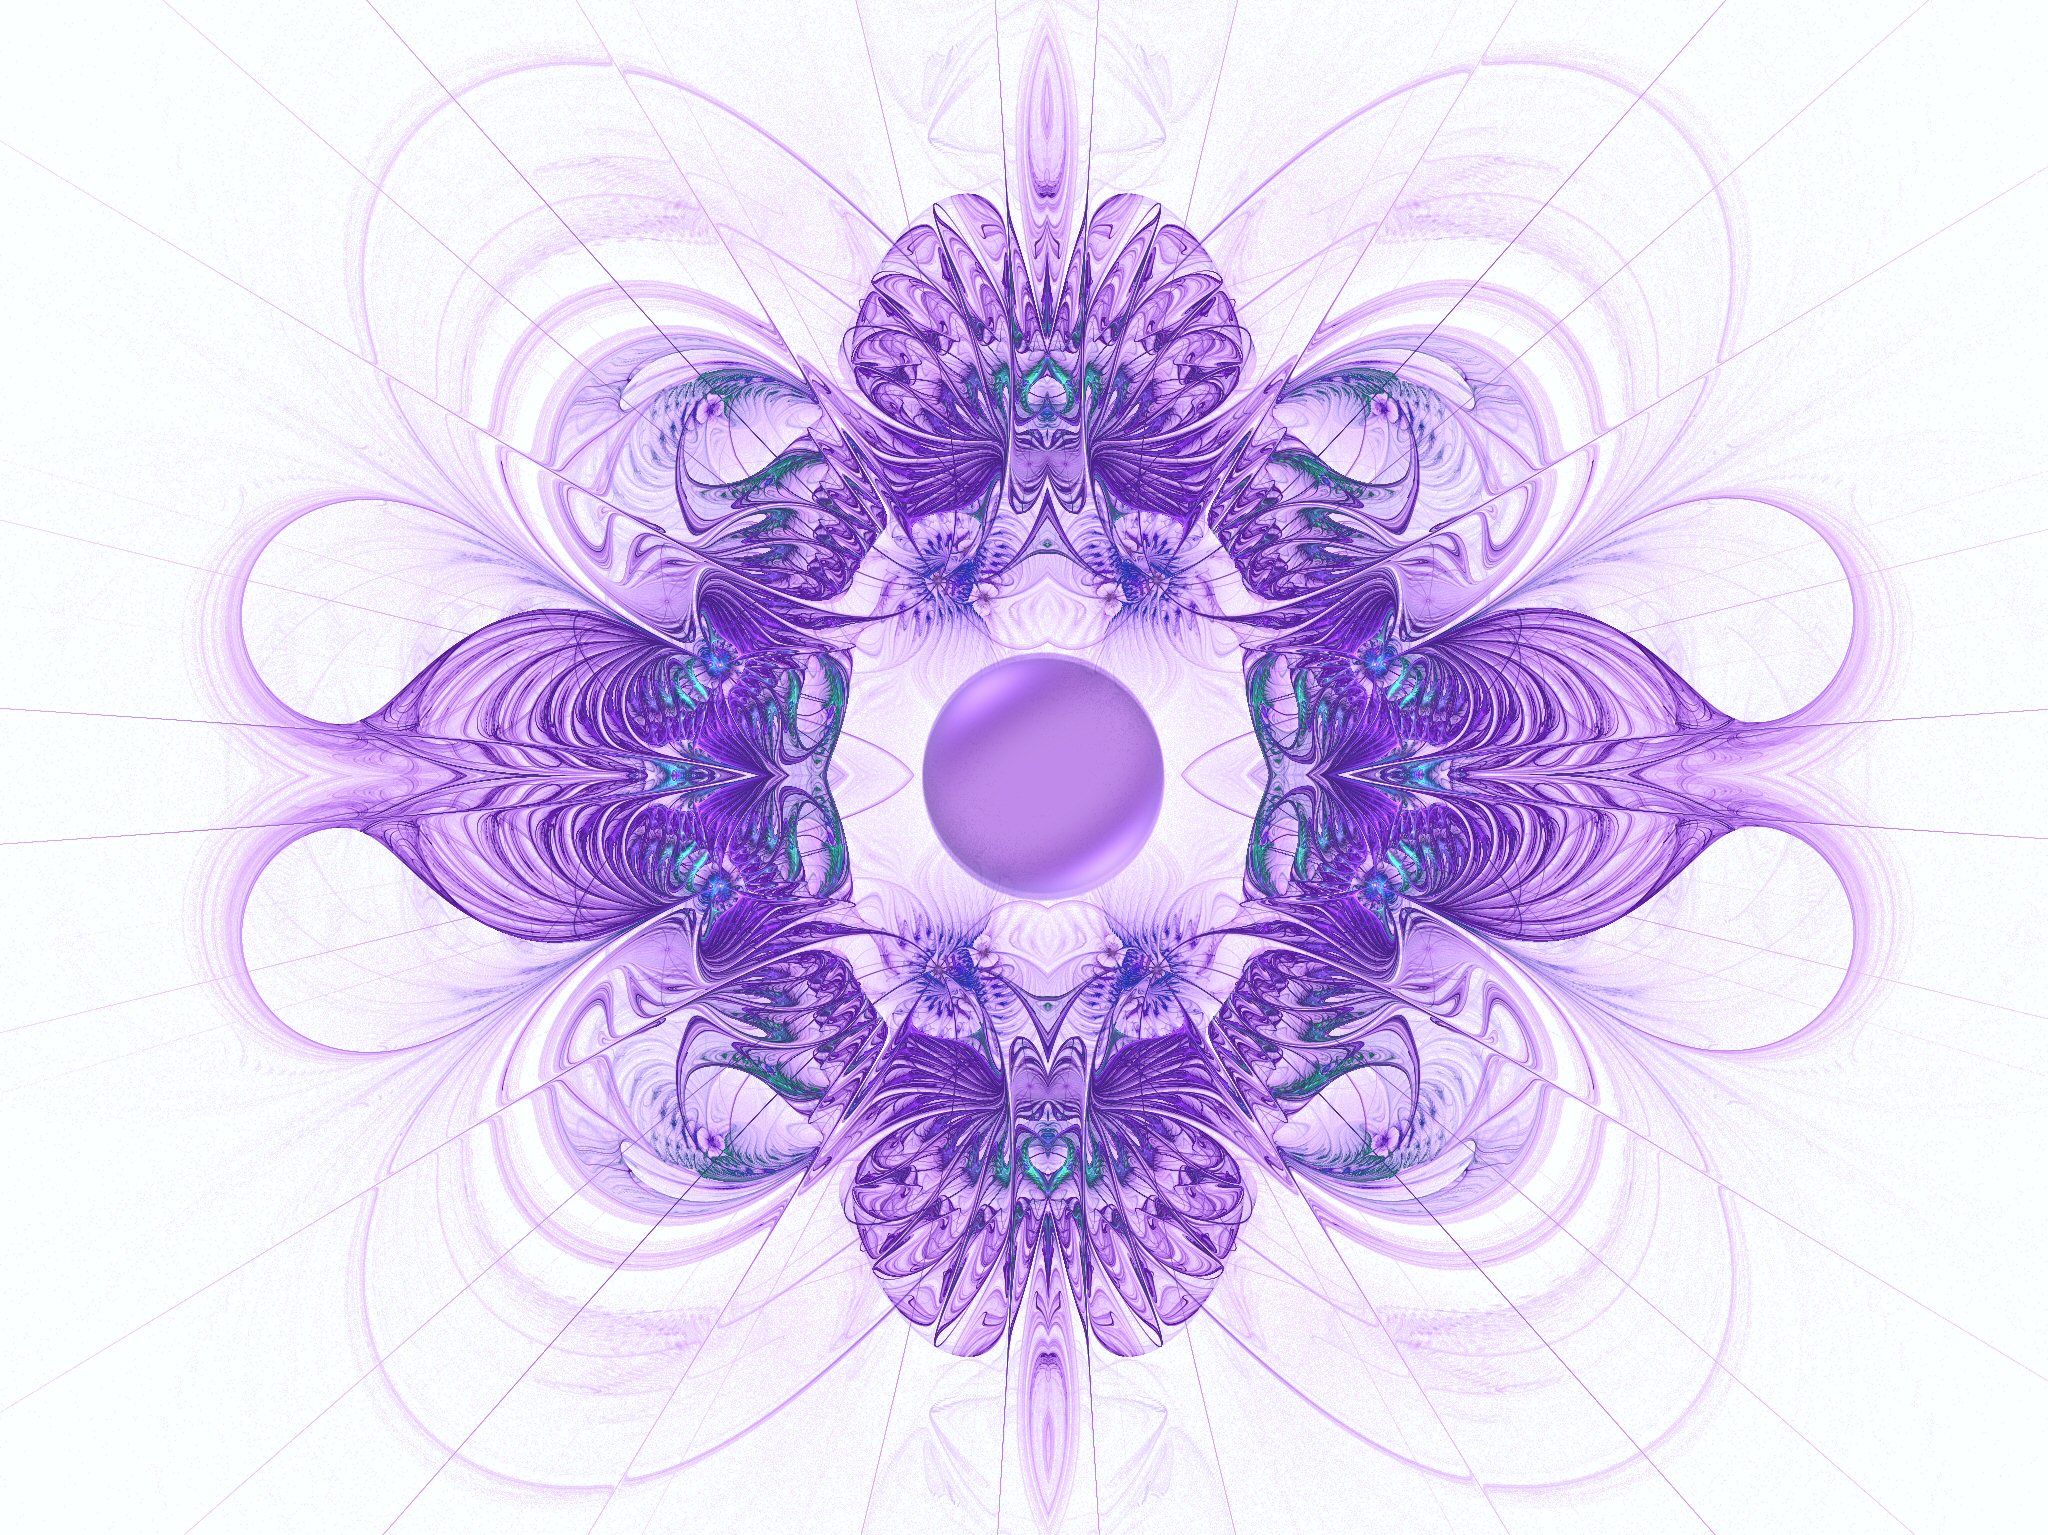 Jeweled Brooch in Purple